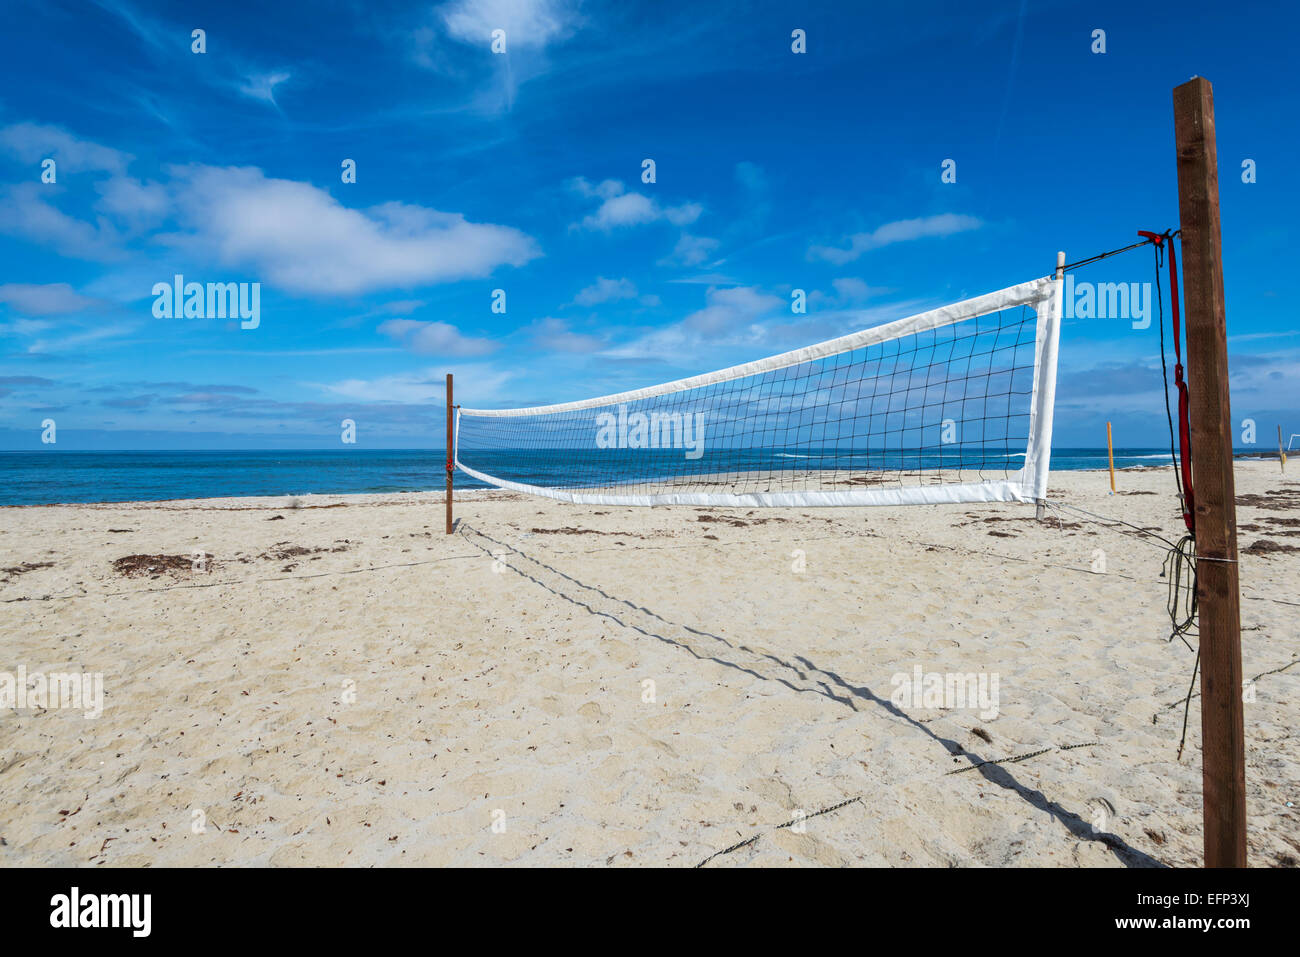 Filet de beach-volley sur la plage de la rue. La Jolla, Californie, États-Unis. Banque D'Images